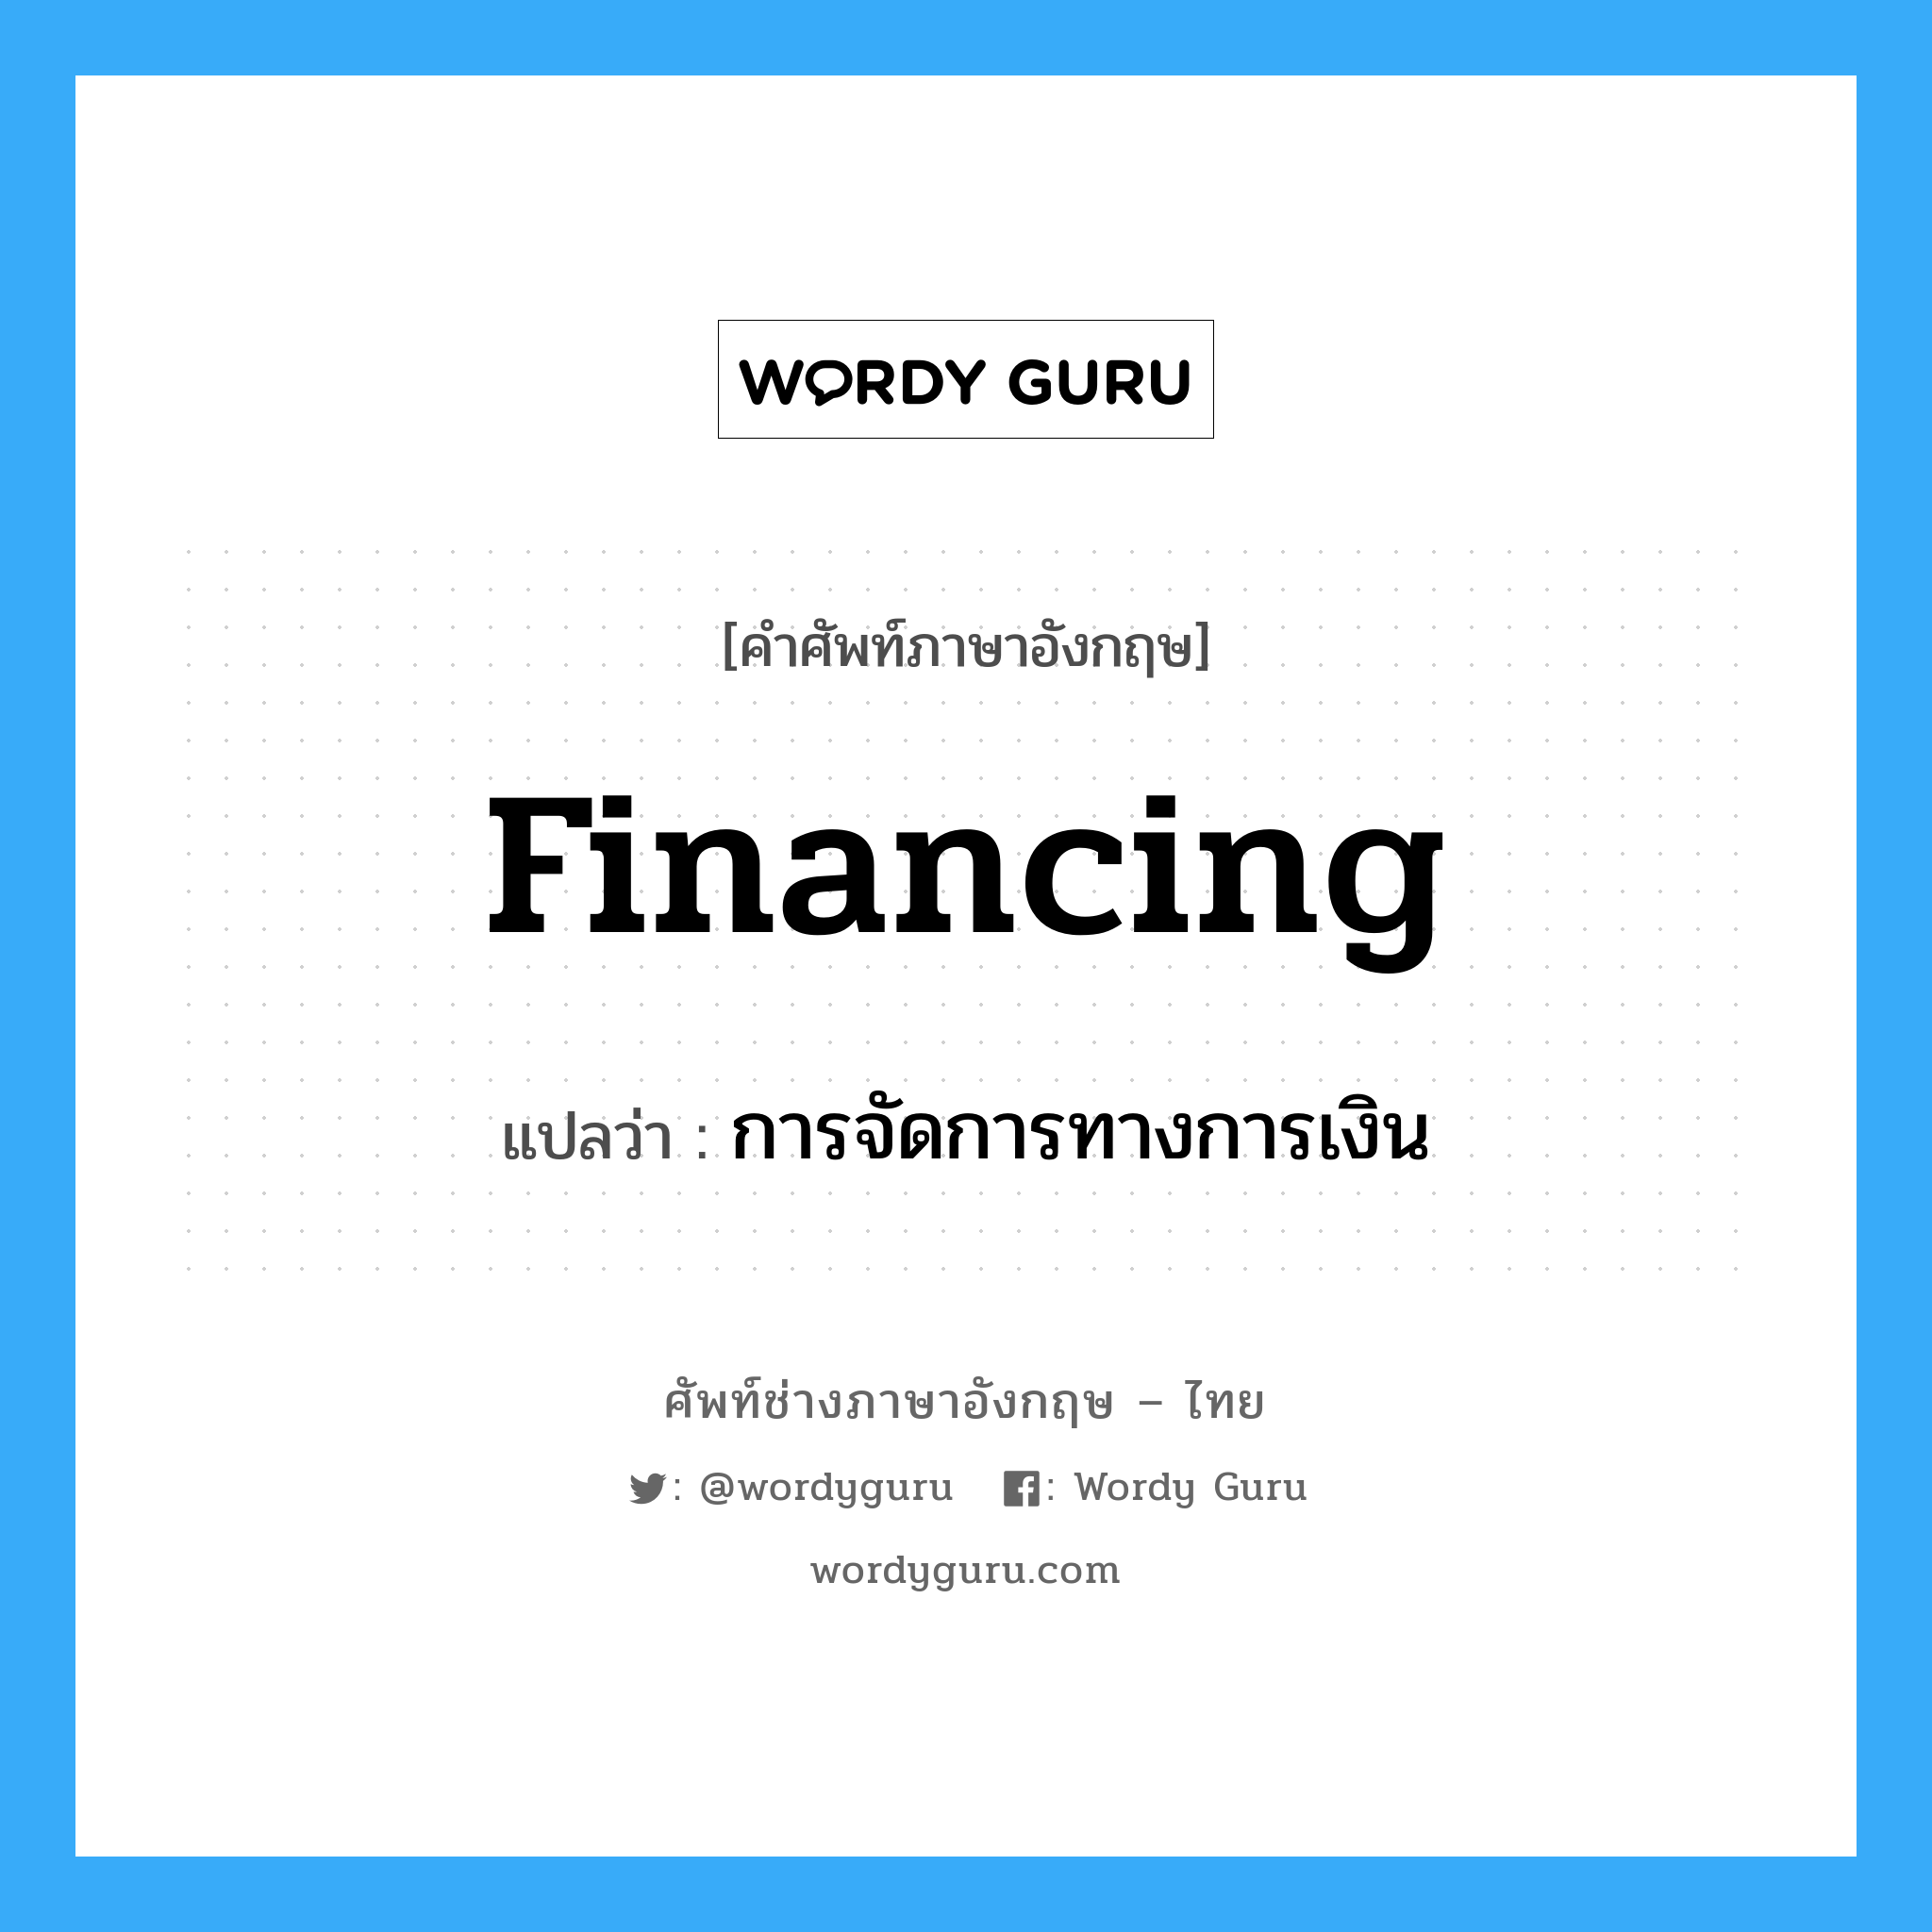 การจัดการทางการเงิน ภาษาอังกฤษ?, คำศัพท์ช่างภาษาอังกฤษ - ไทย การจัดการทางการเงิน คำศัพท์ภาษาอังกฤษ การจัดการทางการเงิน แปลว่า financing